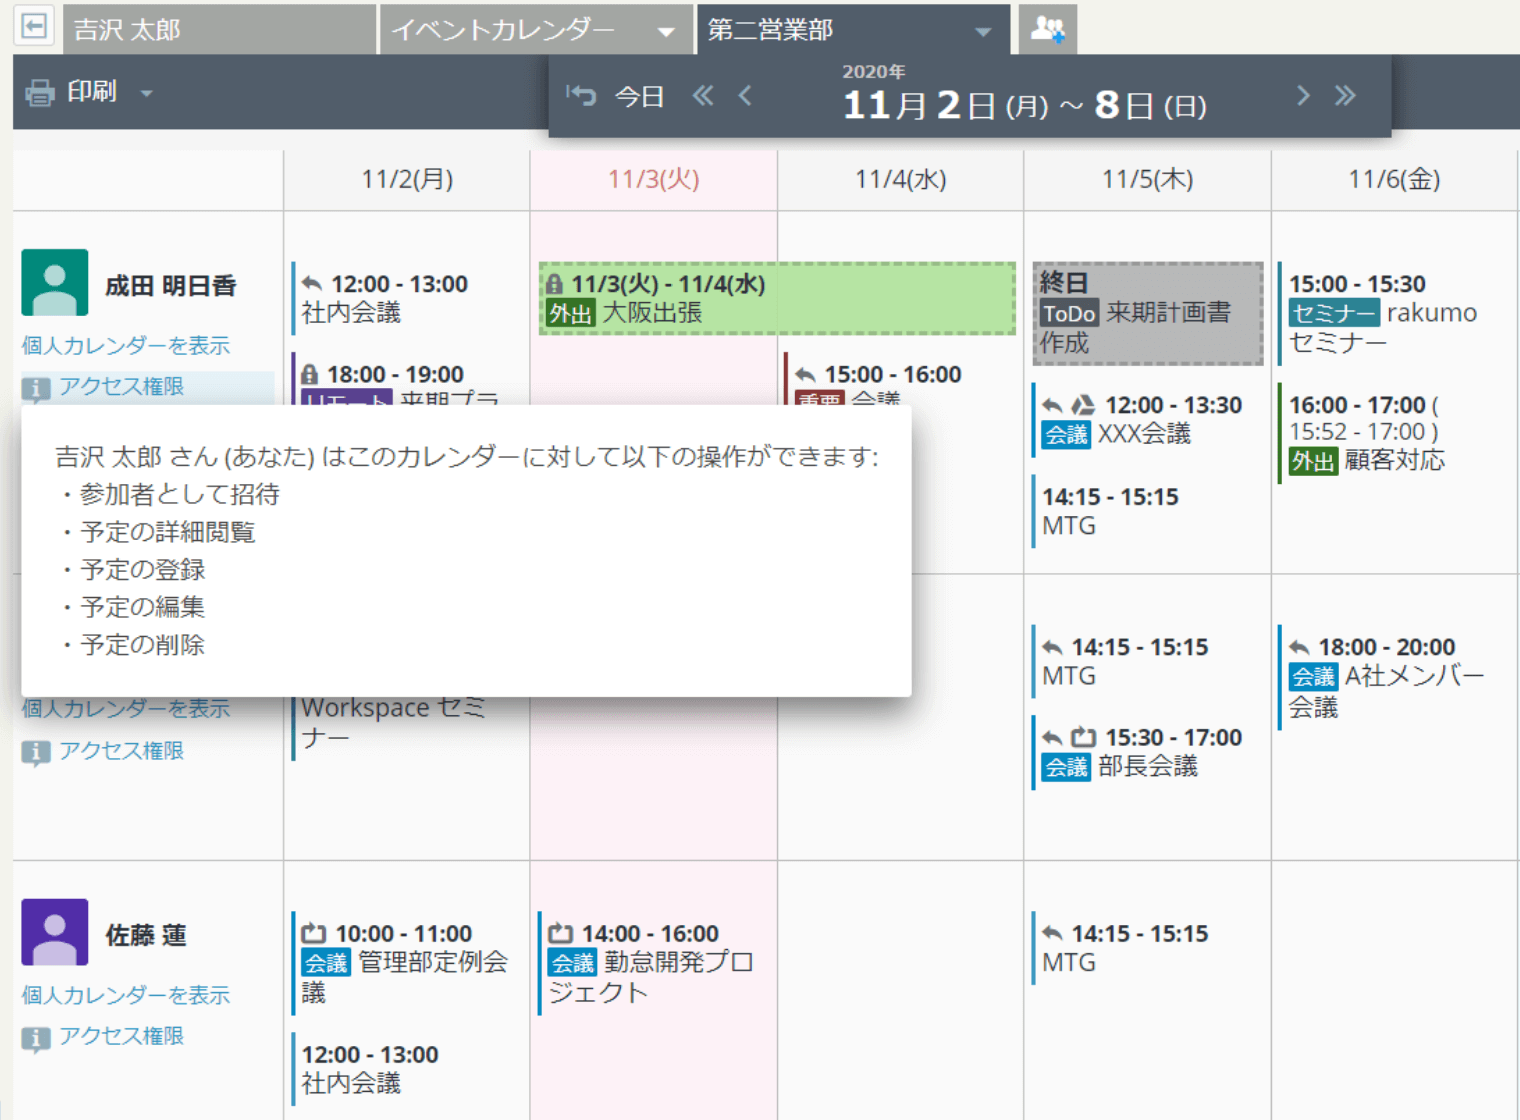 rakumo カレンダー アクセス権限の有無を表示している画面